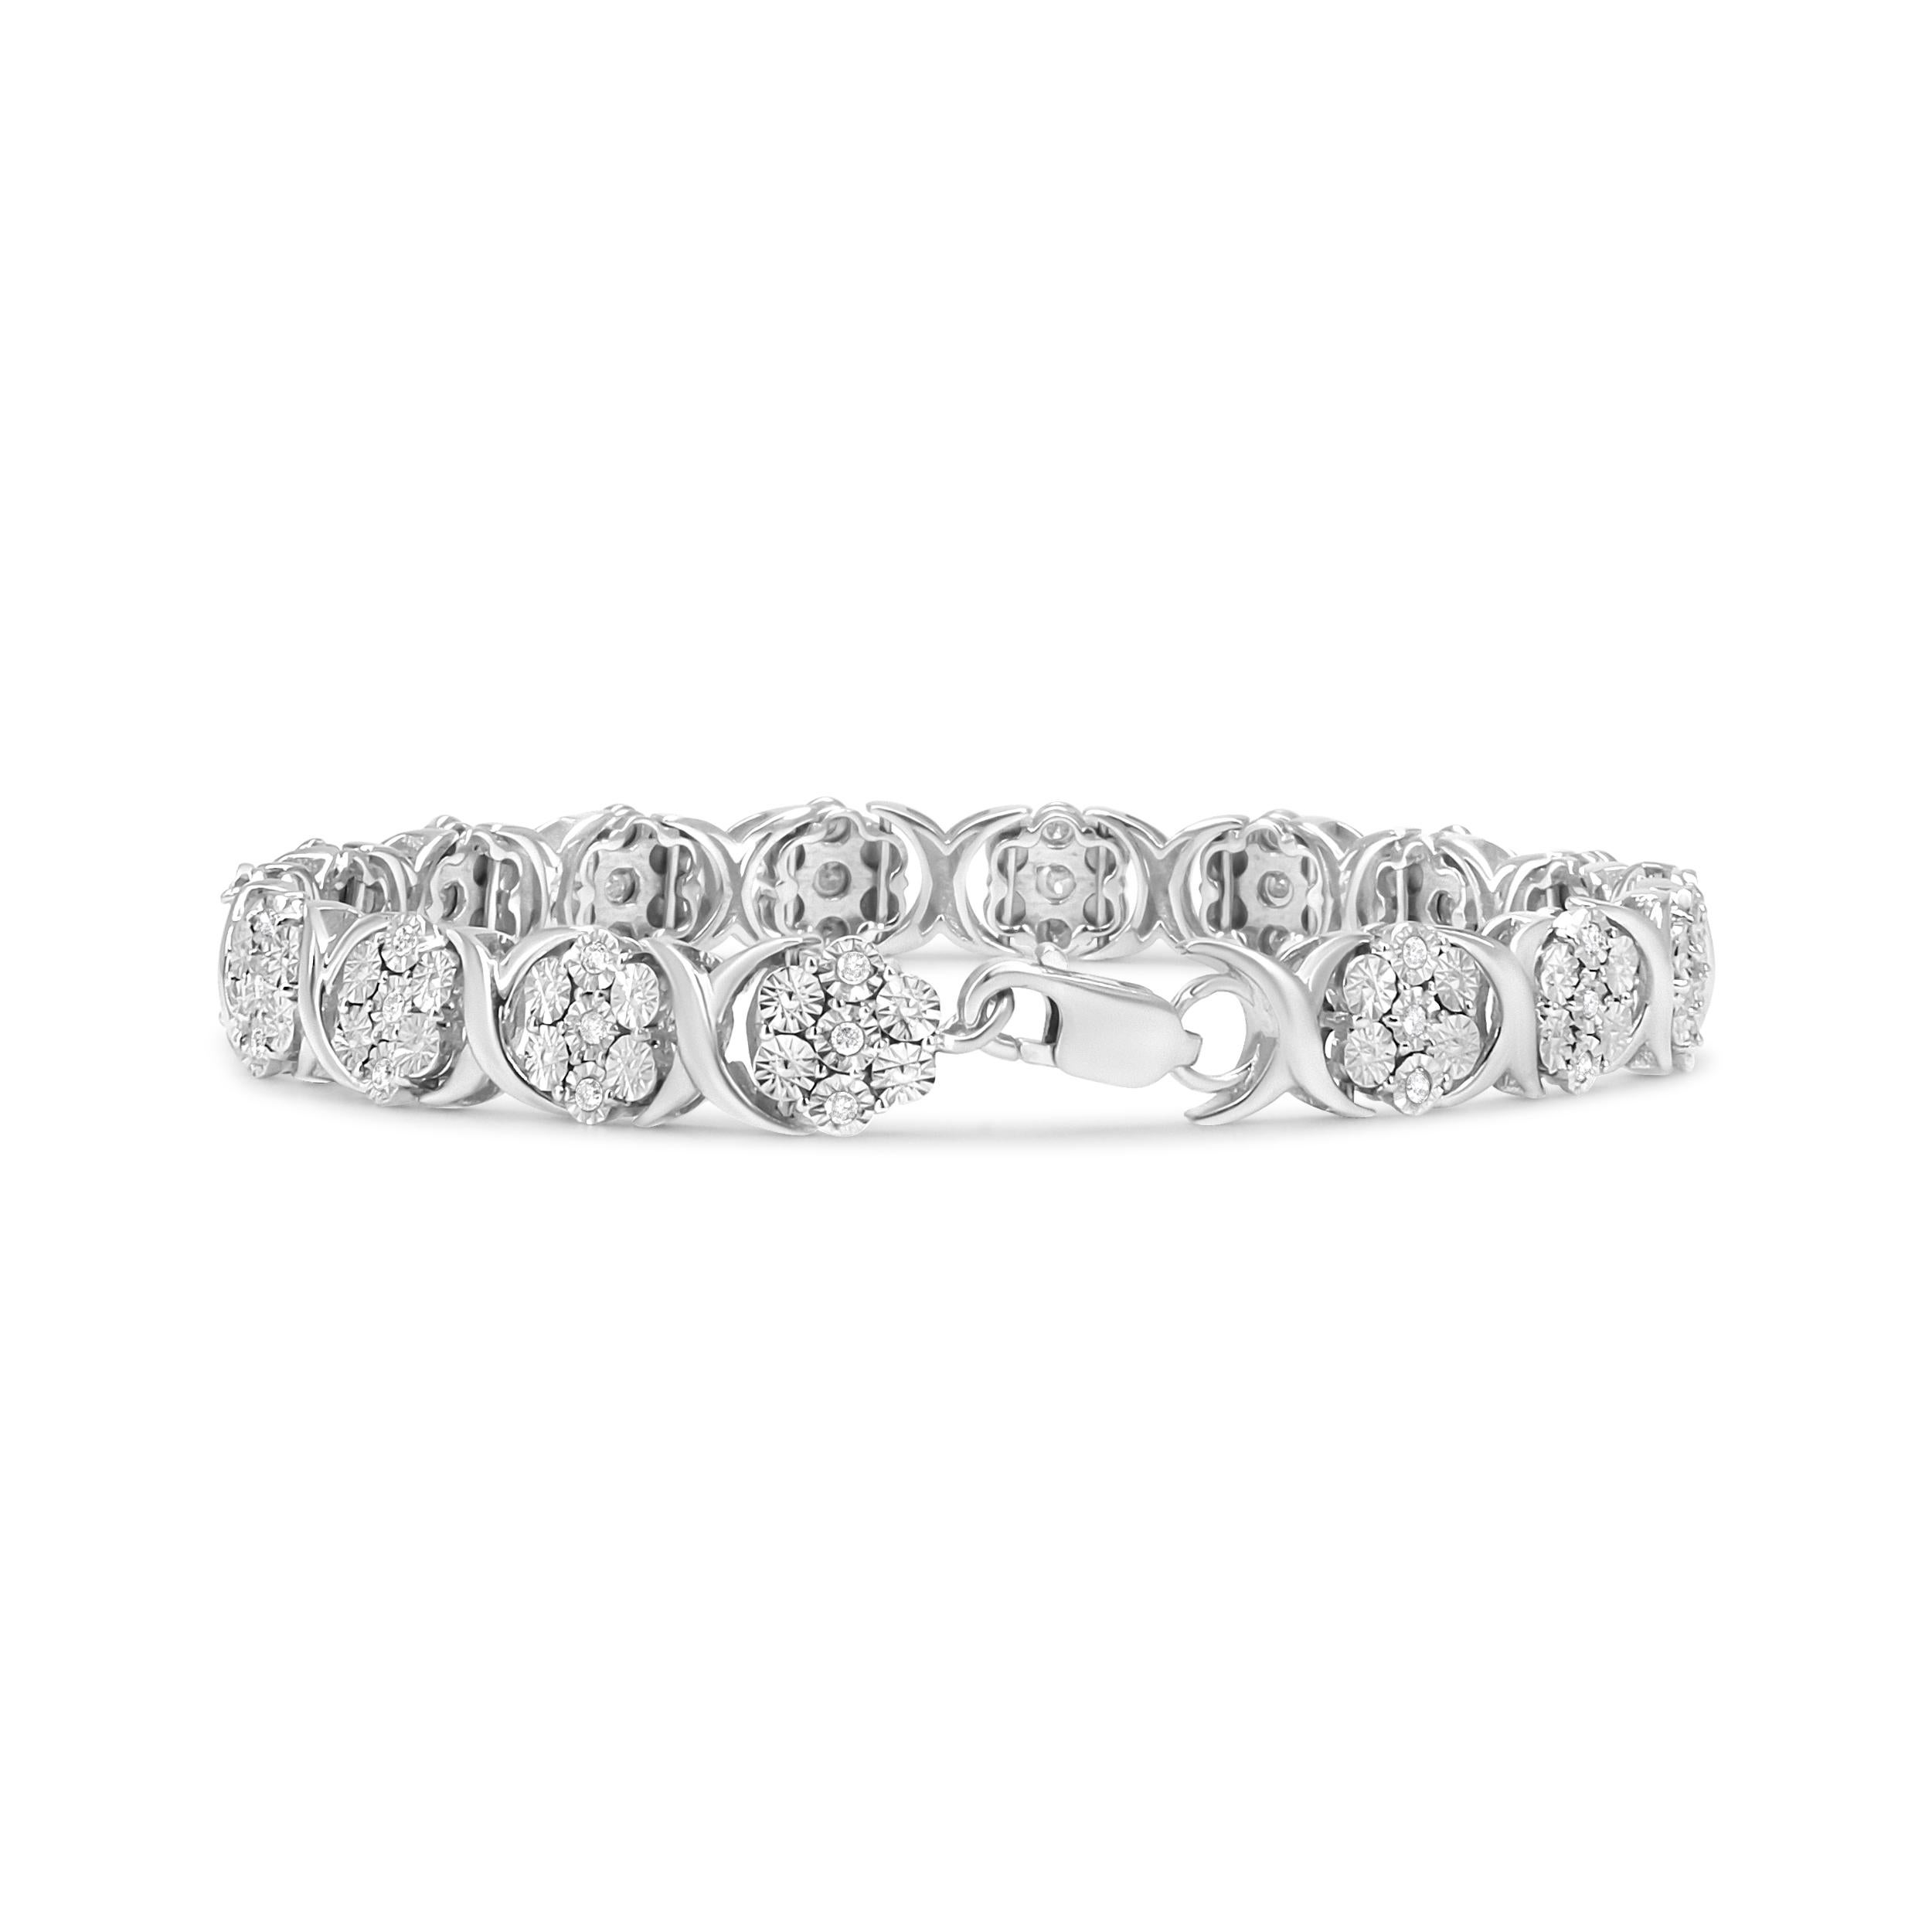 Dieses aufsehenerregende Design ist eine andere Variante des typischen Diamantarmbands und wird durch die 51 natürlichen runden Diamanten in Wunderfassung hervorgehoben, die wunderschöne Blumenbüschel bilden. An einer Kette aus 925er Sterlingsilber